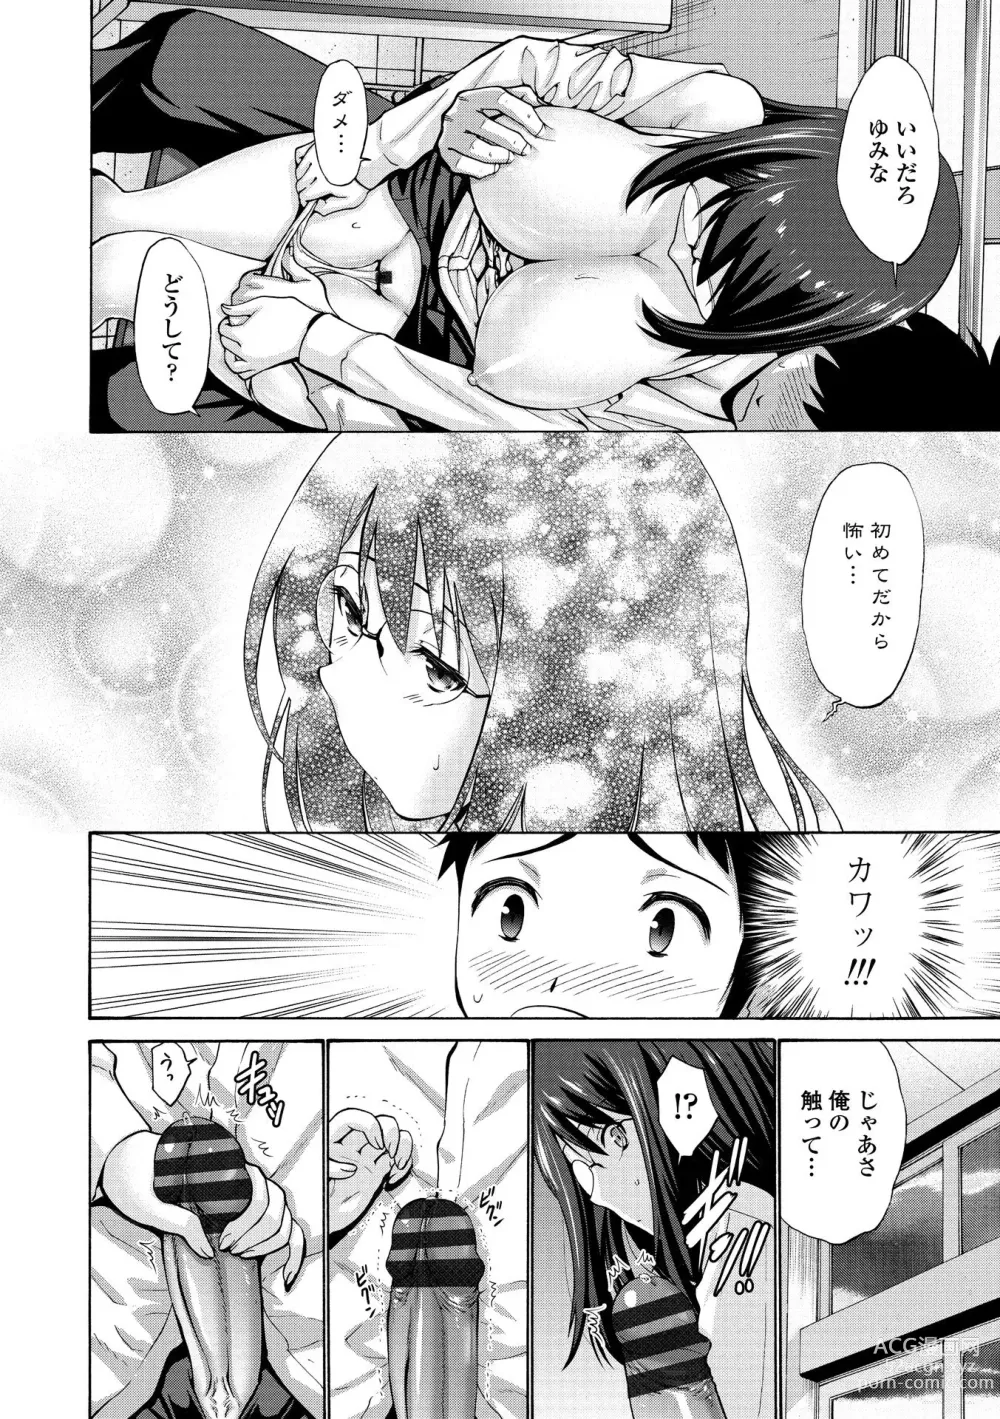 Page 196 of manga Imouto no Naka wa Ii mono da